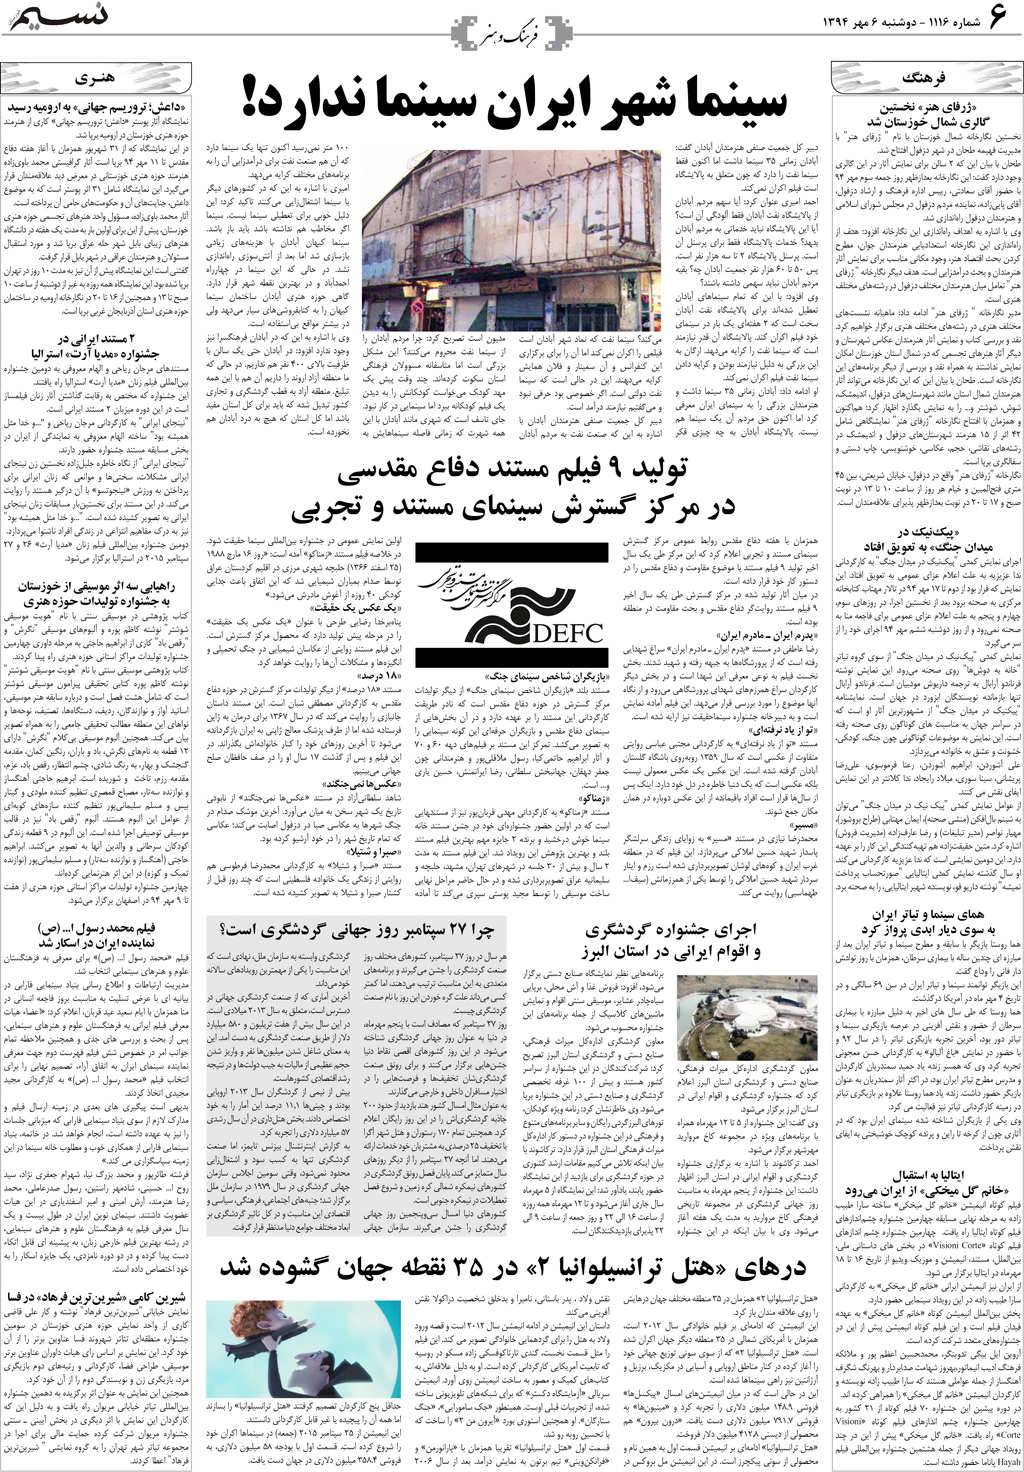 صفحه فرهنگ و هنر روزنامه نسیم شماره 1116